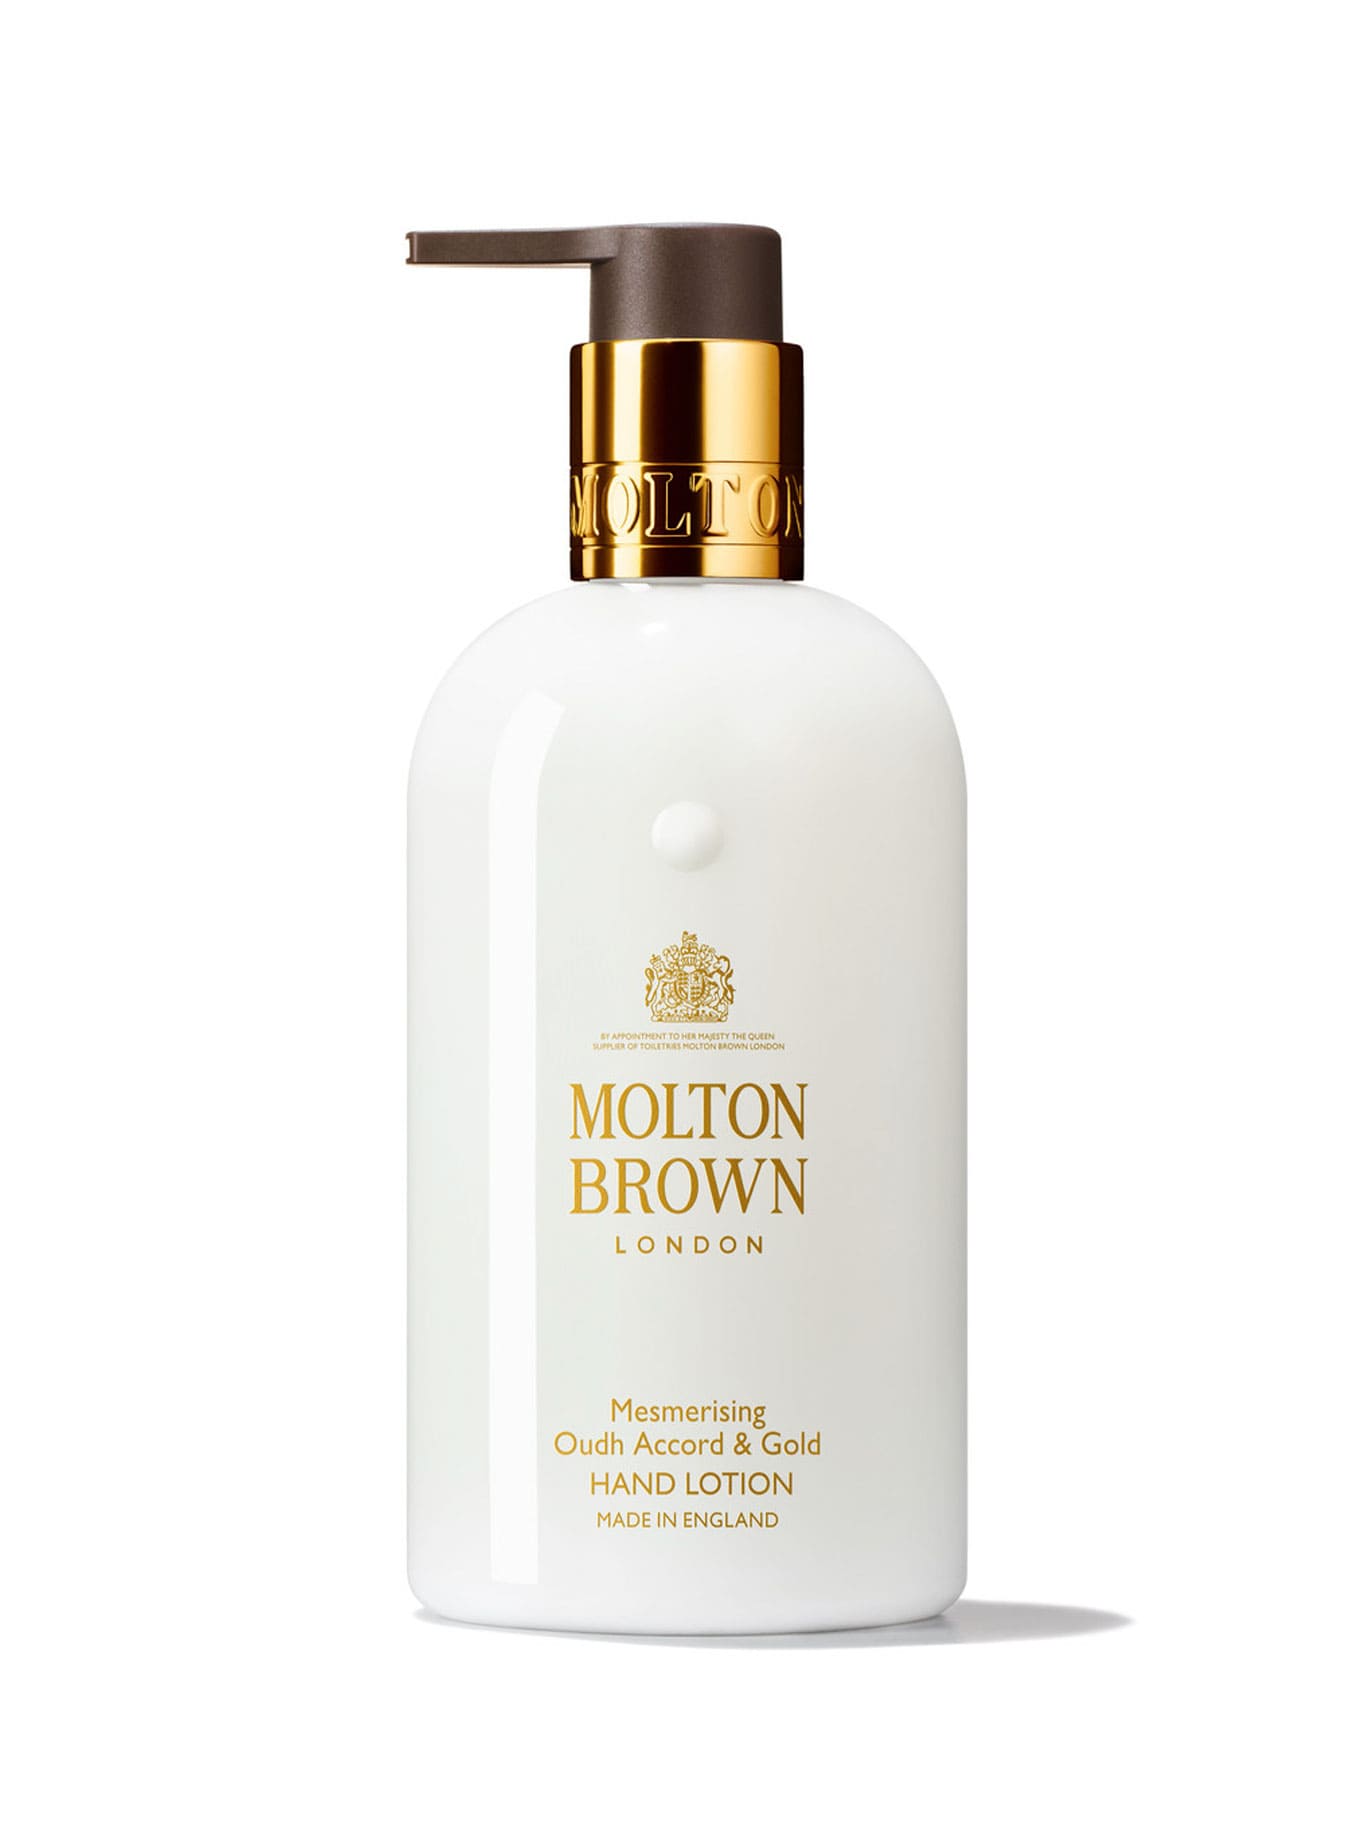 Botella elegante de la Loción de Manos Oudh Accord & Gold de Molton Brown en un entorno natural y sereno.